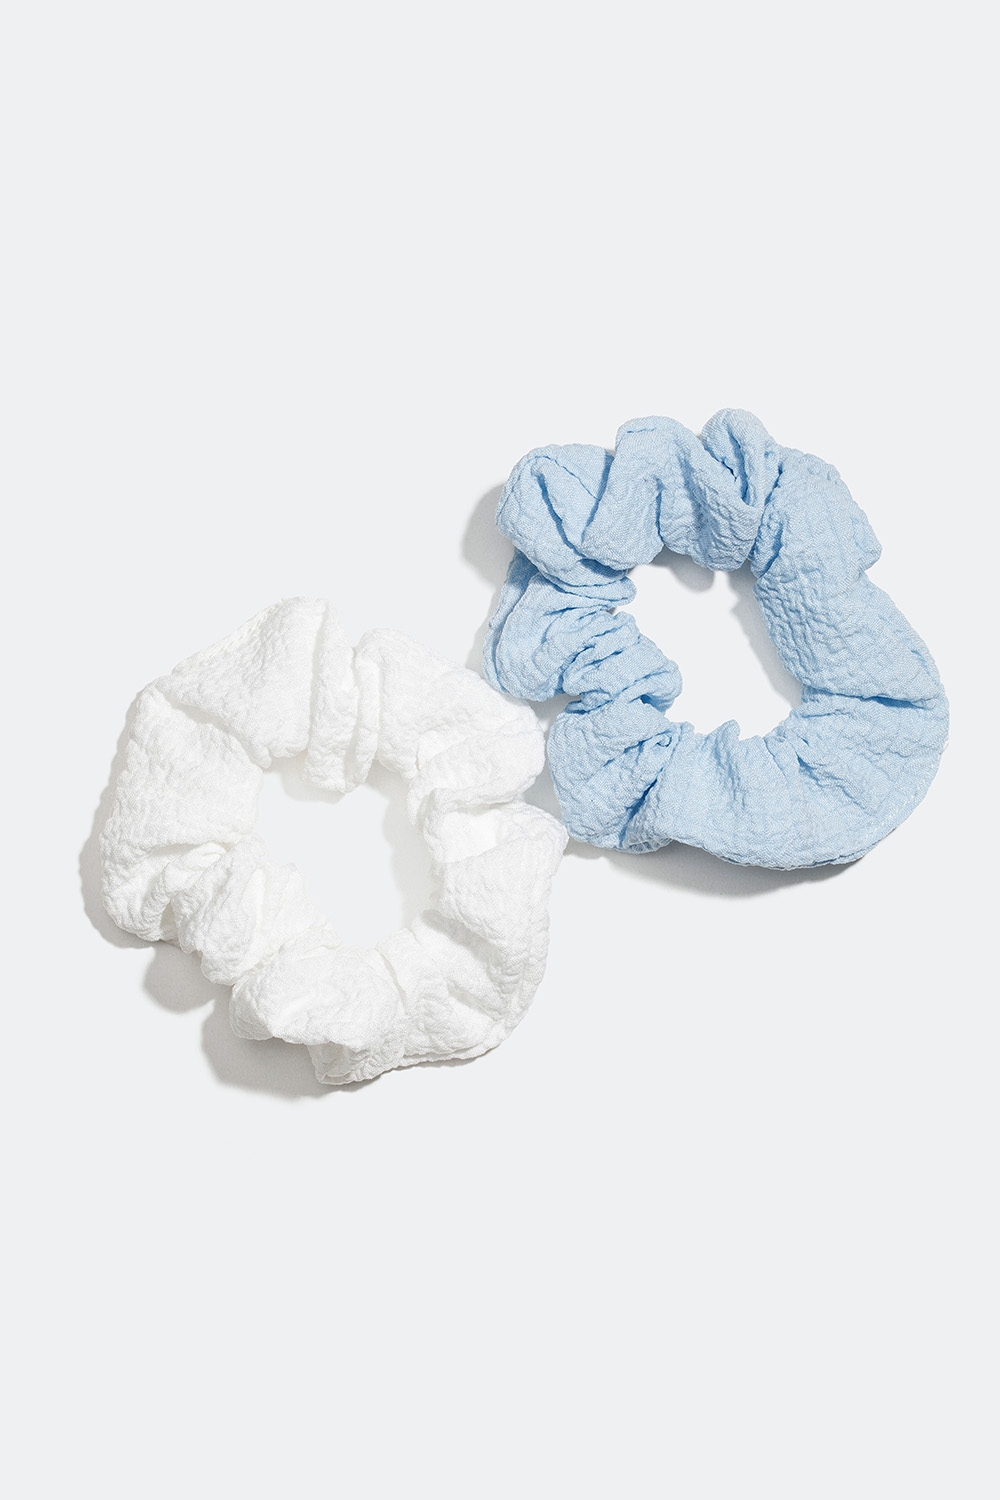 Små krinklade scrunchies i blått och vitt, 2-pack i gruppen Håraccessoarer / Scrunchies / Flerpack hos Glitter (332000667100)